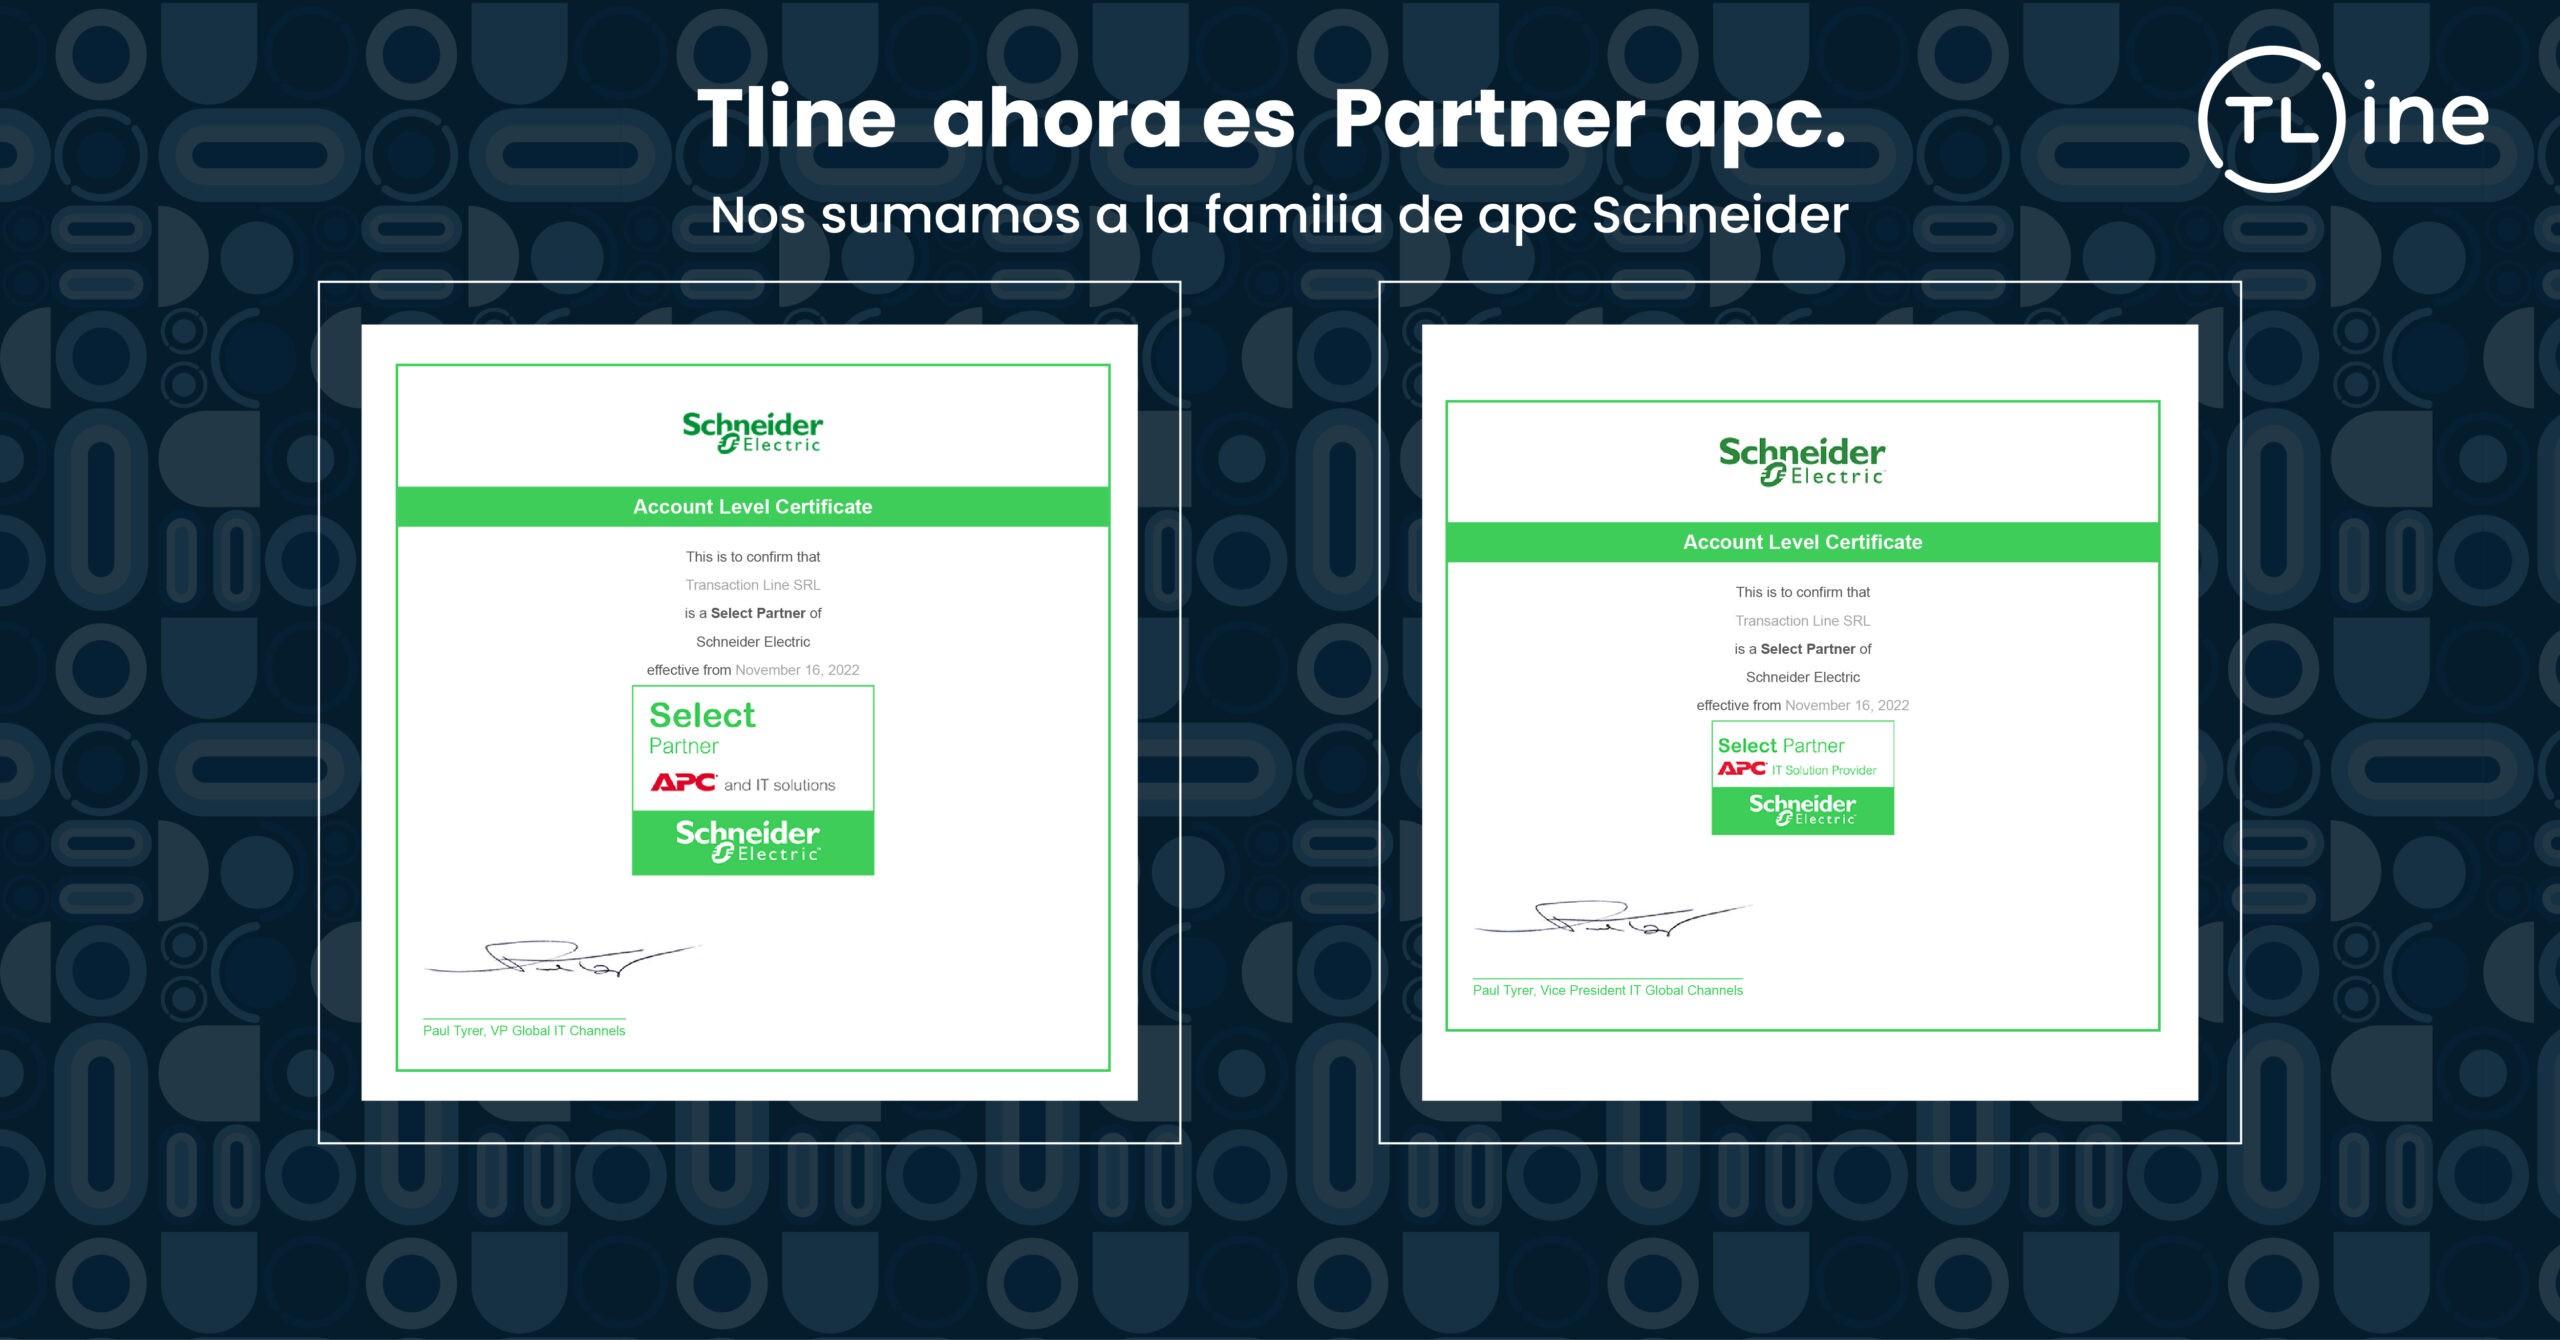 Tline es el nuevo Partner Select de APC